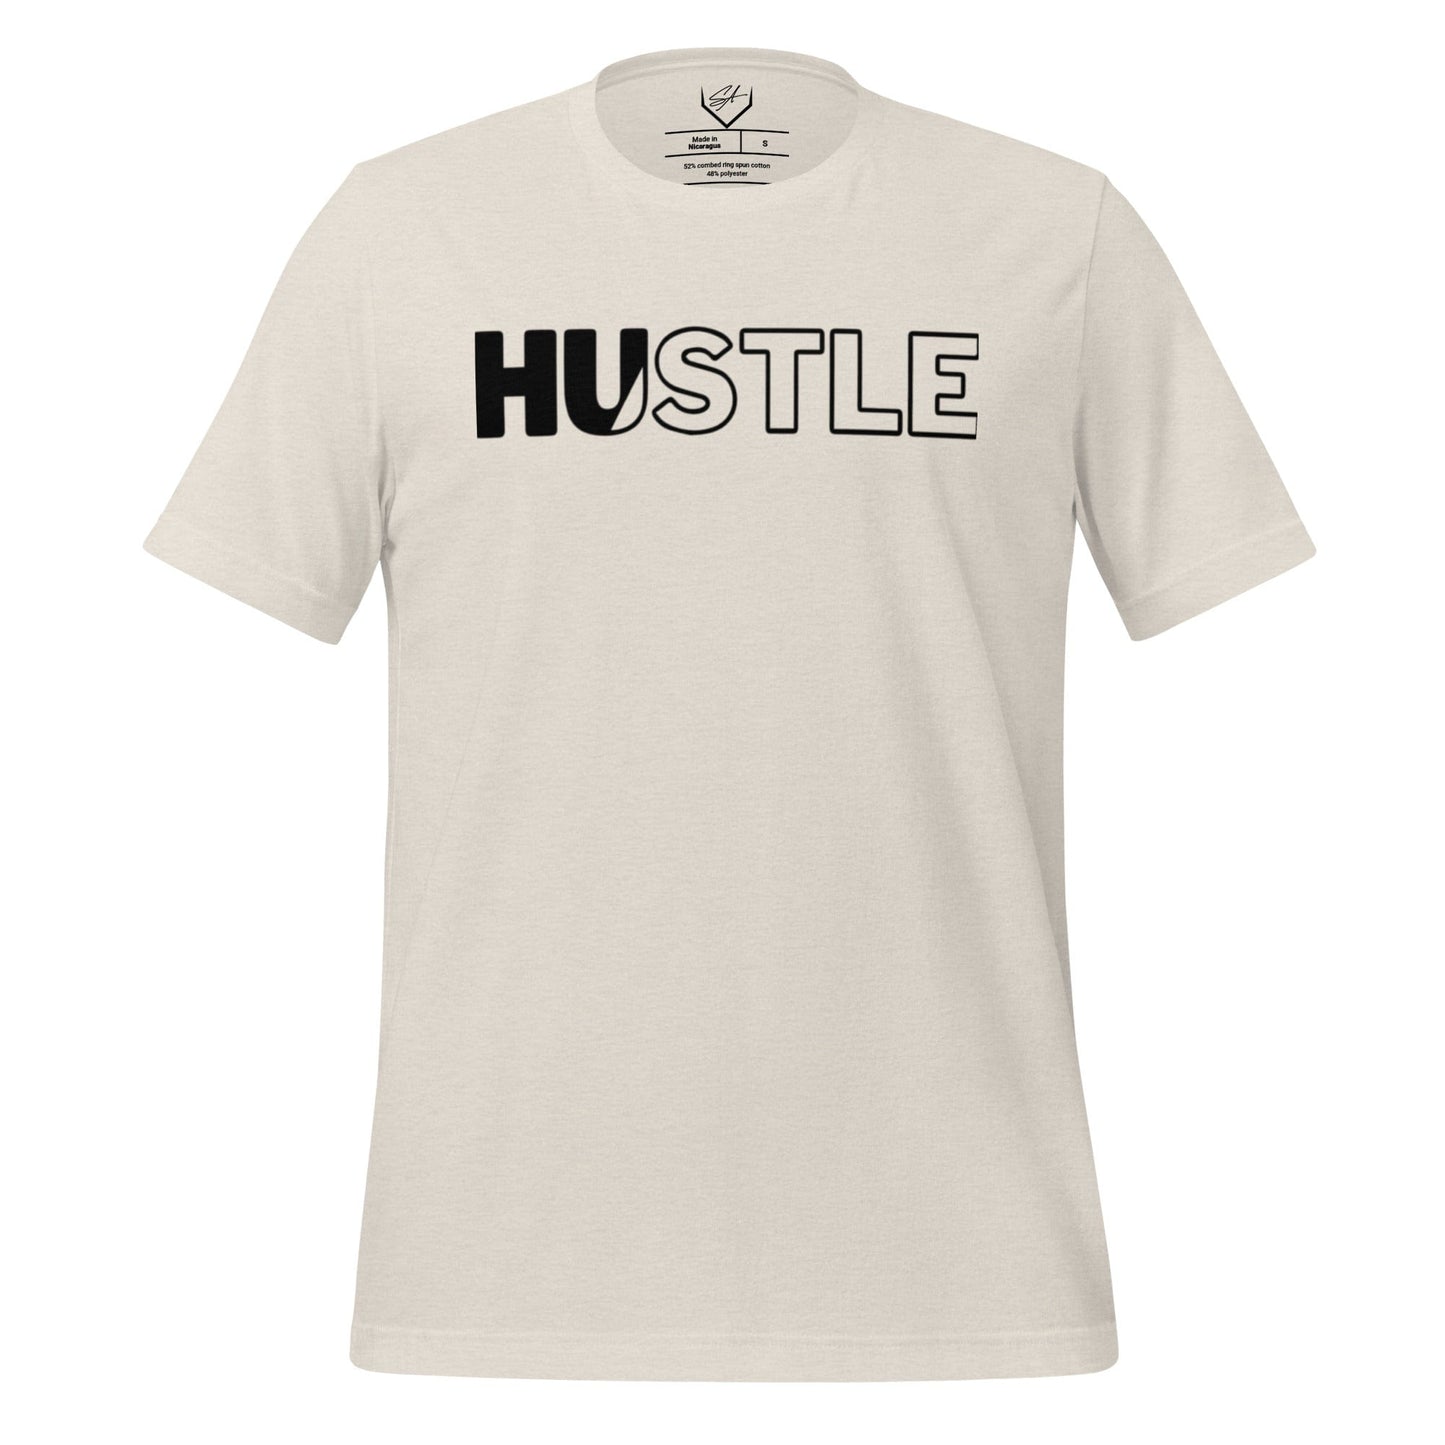 Hustle - Adult Tee